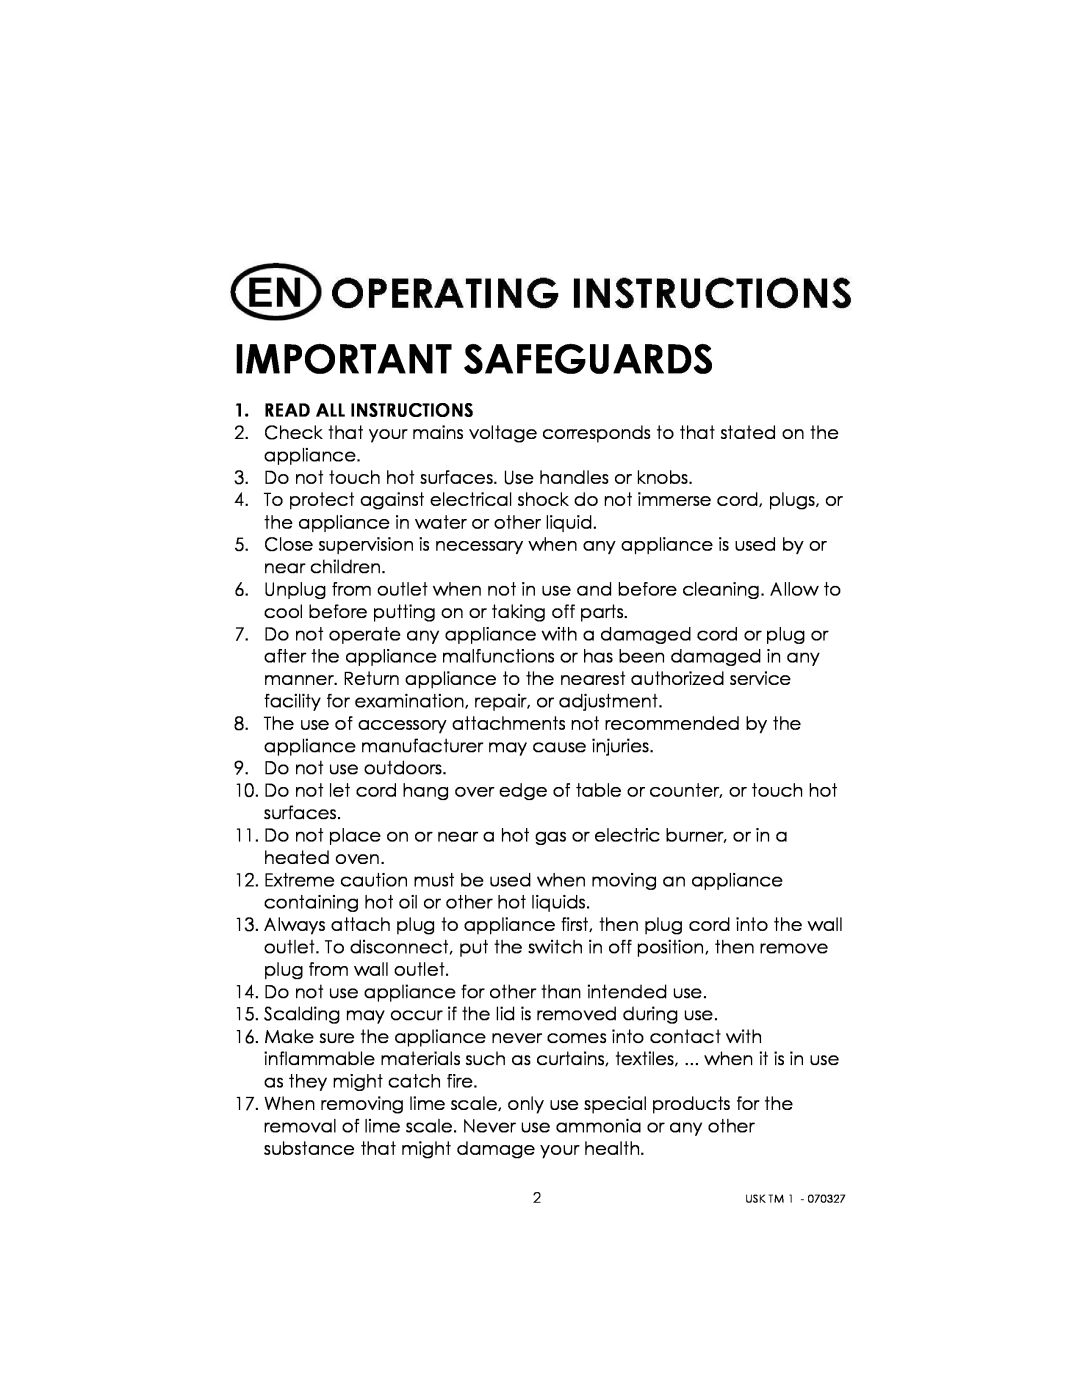 Kalorik usktm1 manual Important Safeguards 